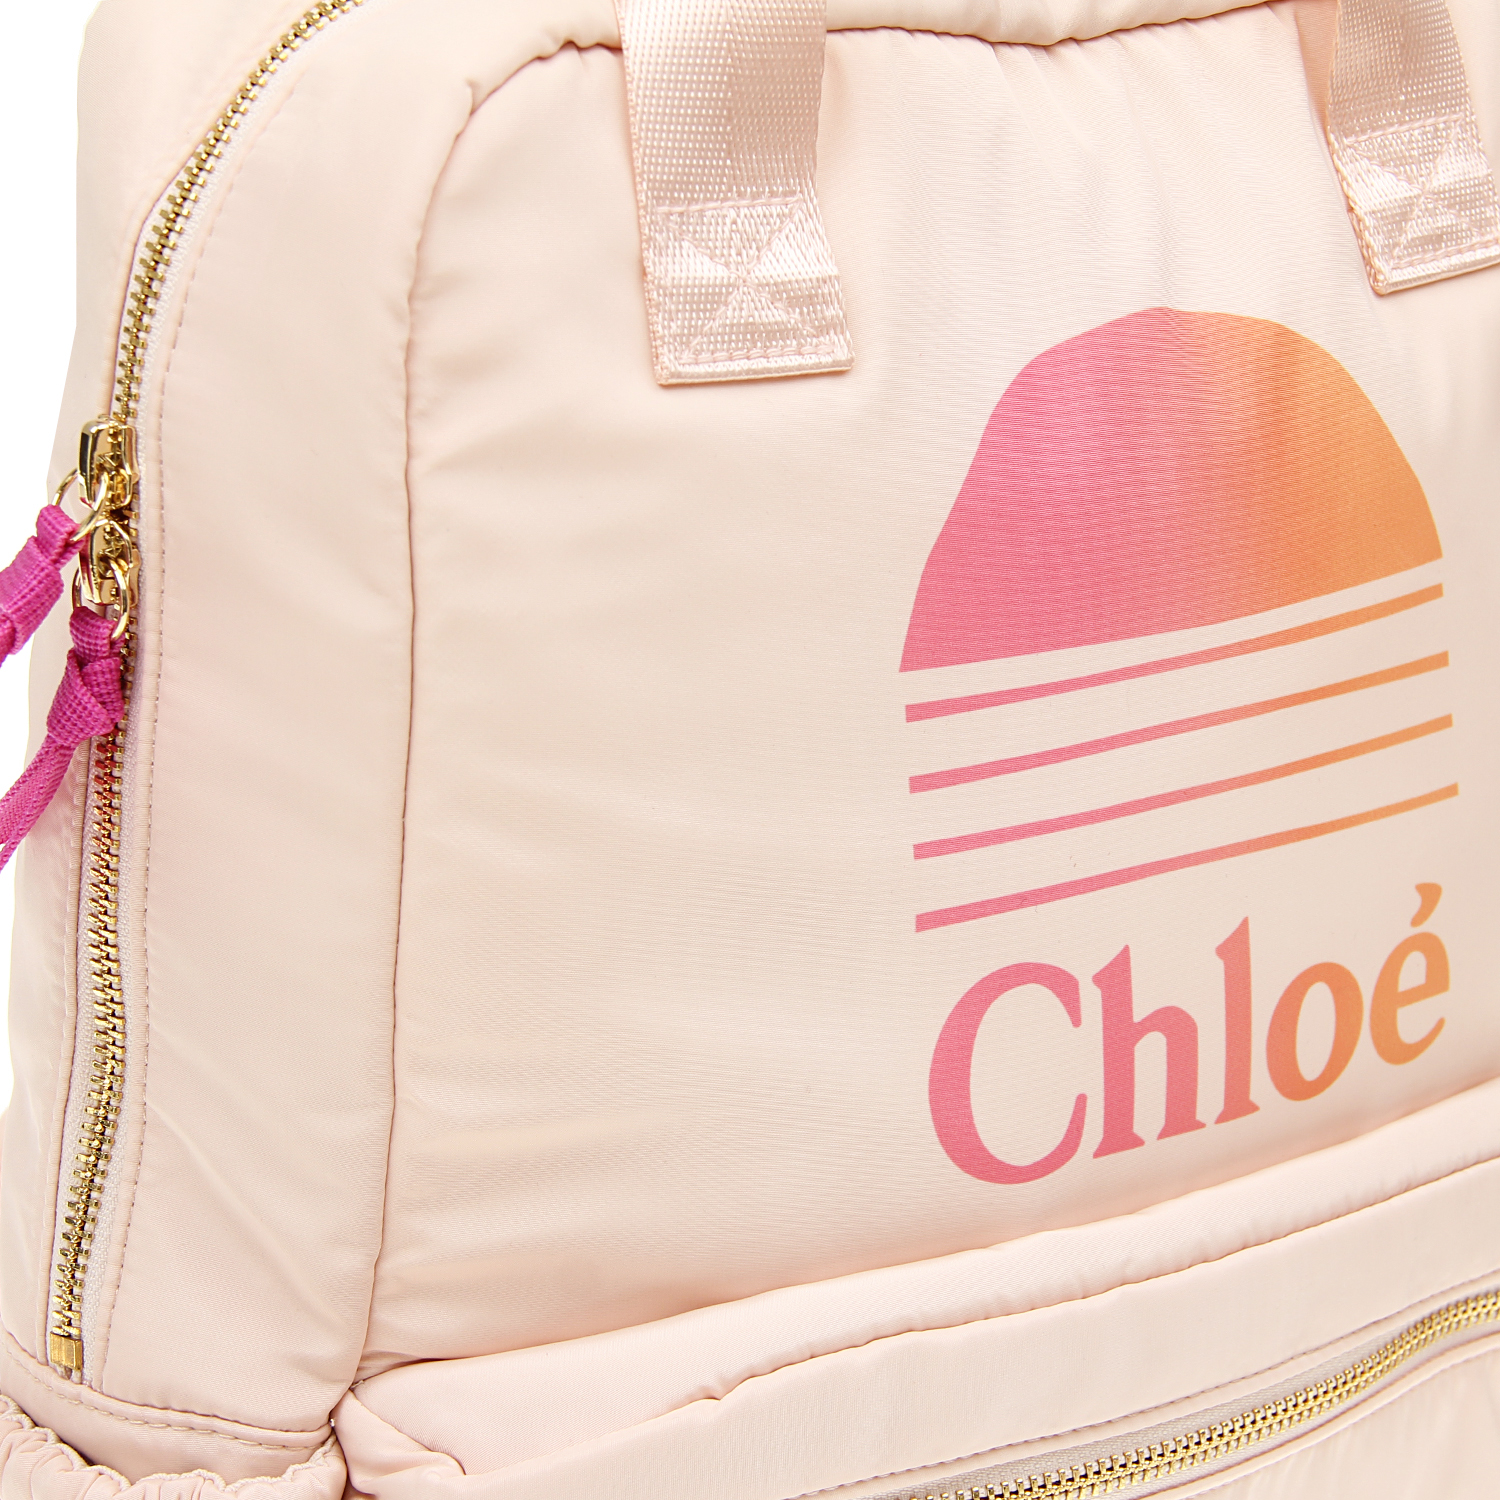 Рюкзак с логотипом, 34x27x8 см Chloe детский, размер unica, цвет мультиколор - фото 5